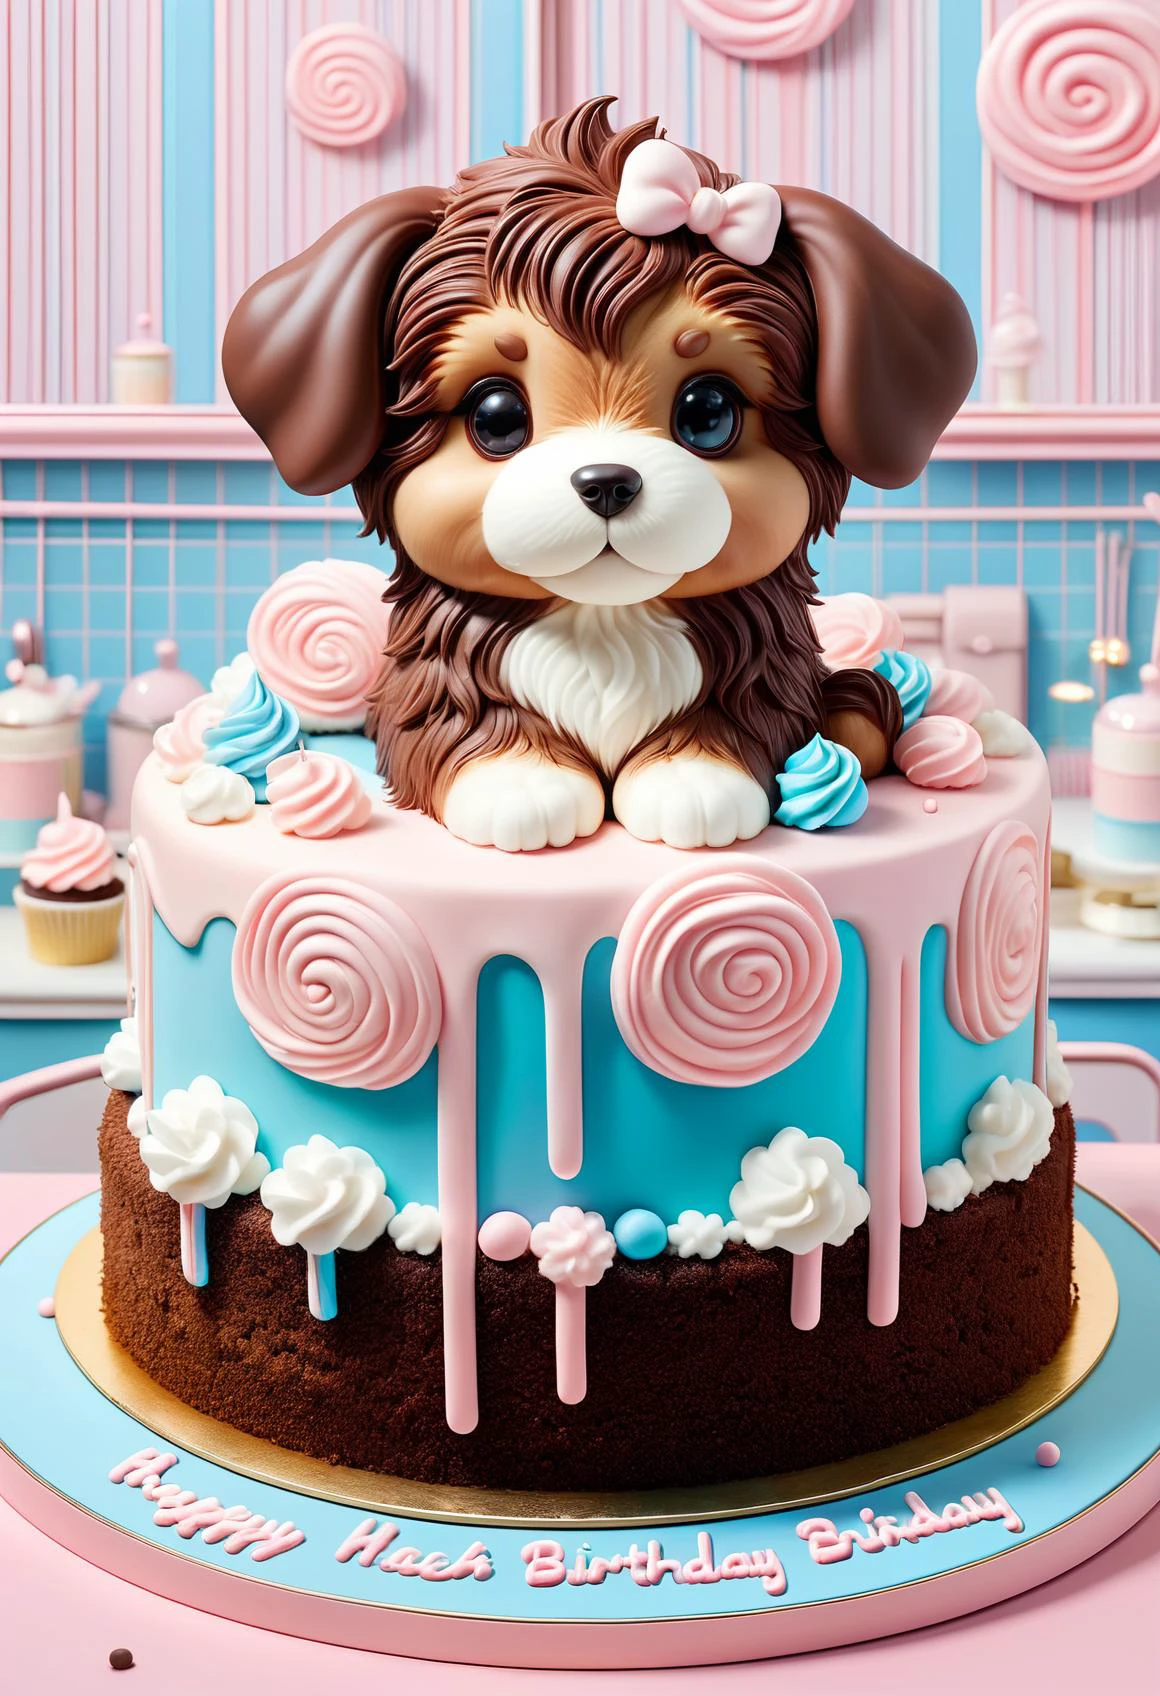 棉花糖 一個漂亮的小狗造型的巧克力生日蛋糕, 專業的, 高品質, 超可愛, 卡哇伊, 8K, 可愛的,